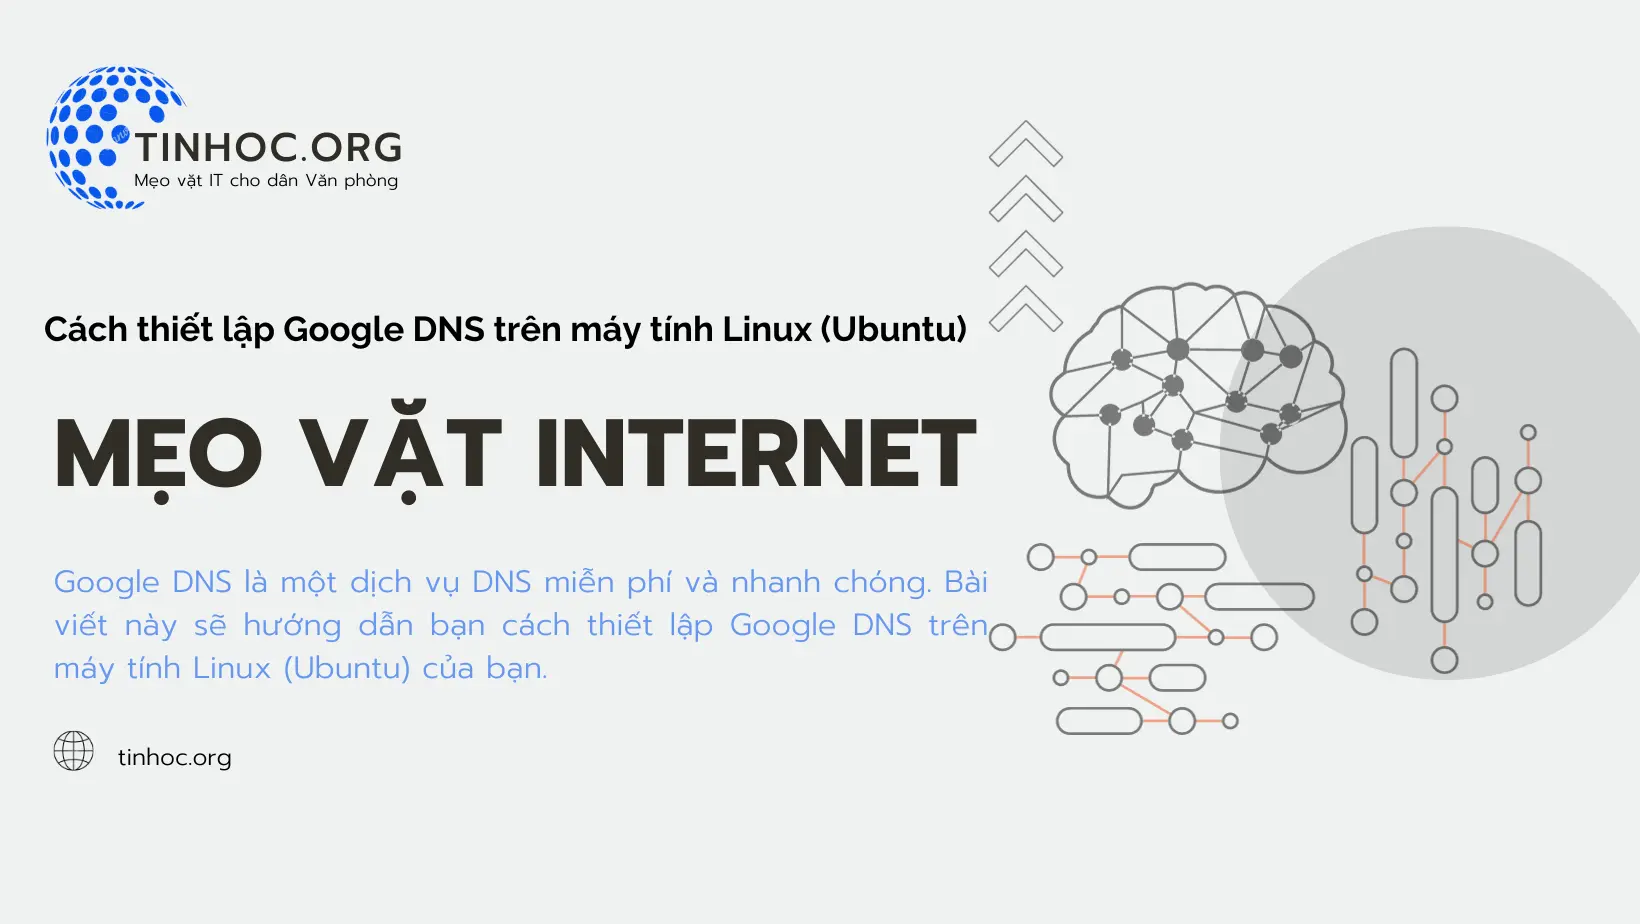 Cách thiết lập Google DNS trên máy tính Linux (Ubuntu)